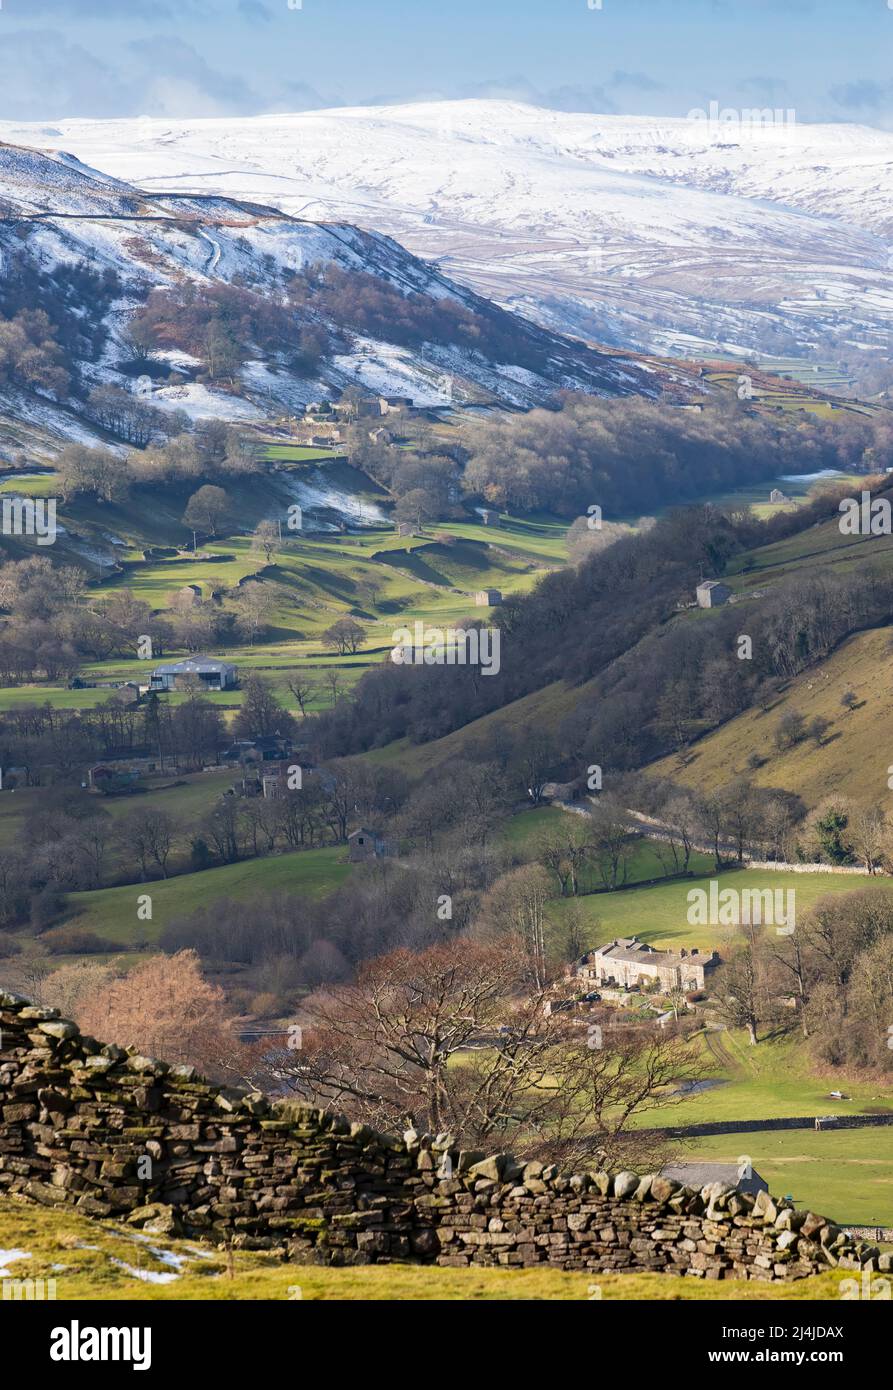 Swaledale, parc national de Yorkshire Dales, collines enneigées au-dessus d'une mosaïque de champs et de pâturages bordés de murs de pierre sèche avec des granges en pierre emblématiques Banque D'Images